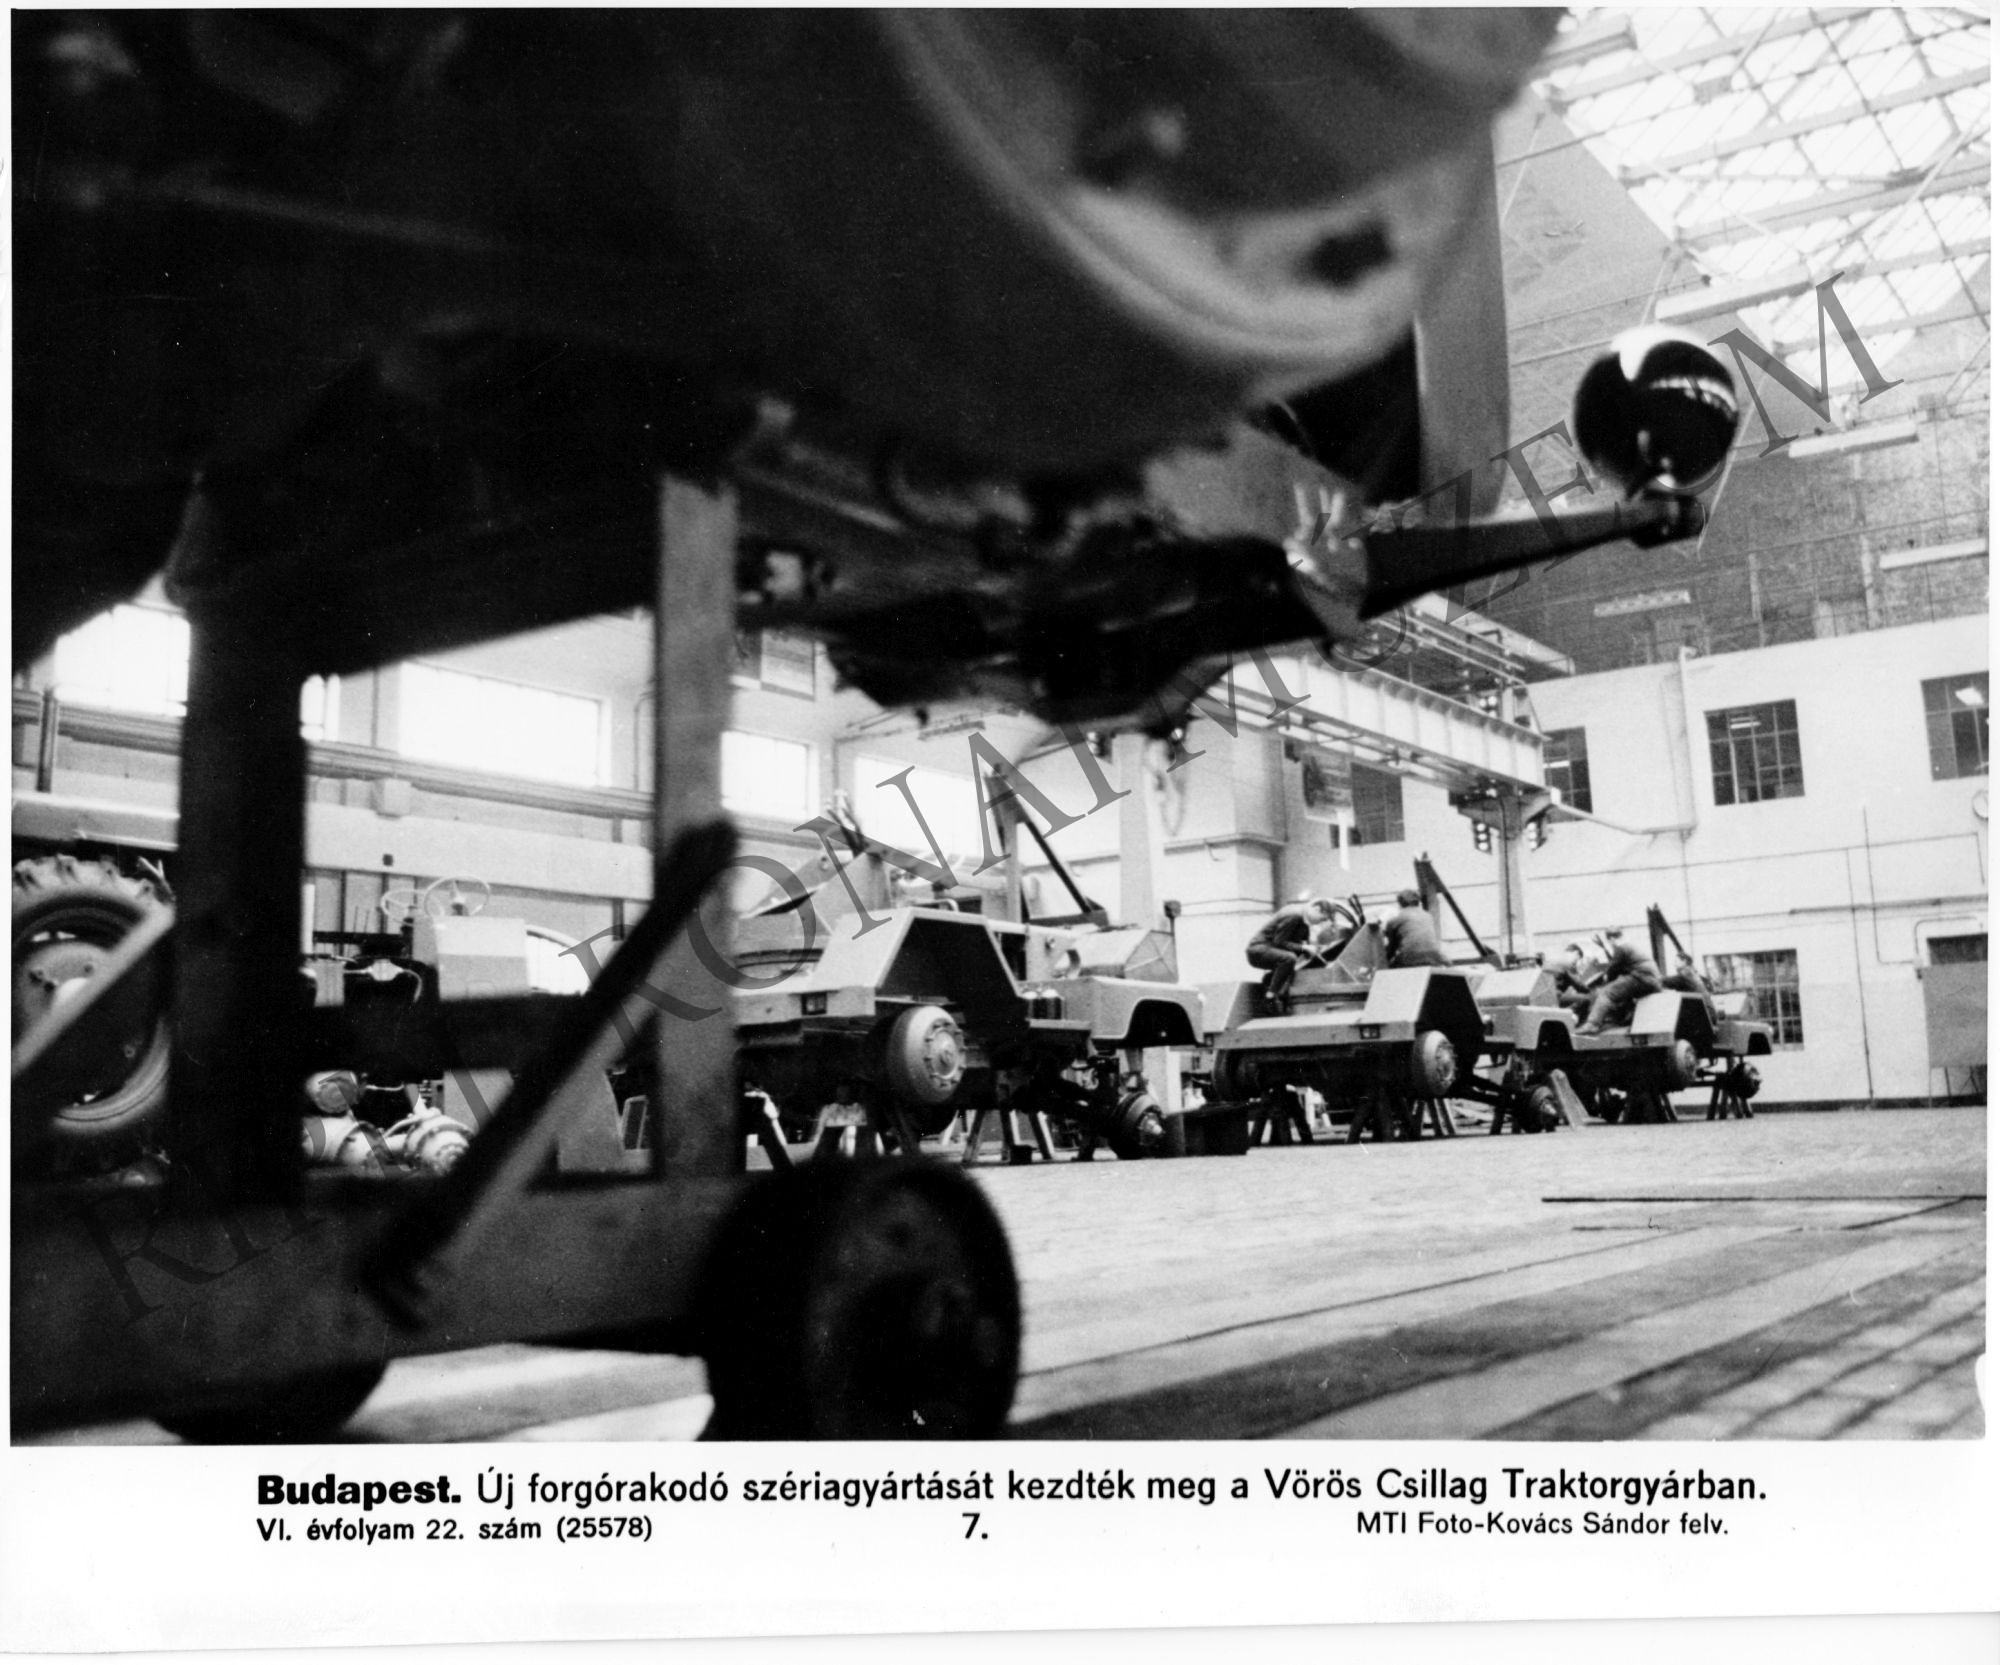 A Vörös Csillag Traktorgyárban új forgórakódó szériagyártását kezdték meg (Rippl-Rónai Múzeum CC BY-NC-SA)